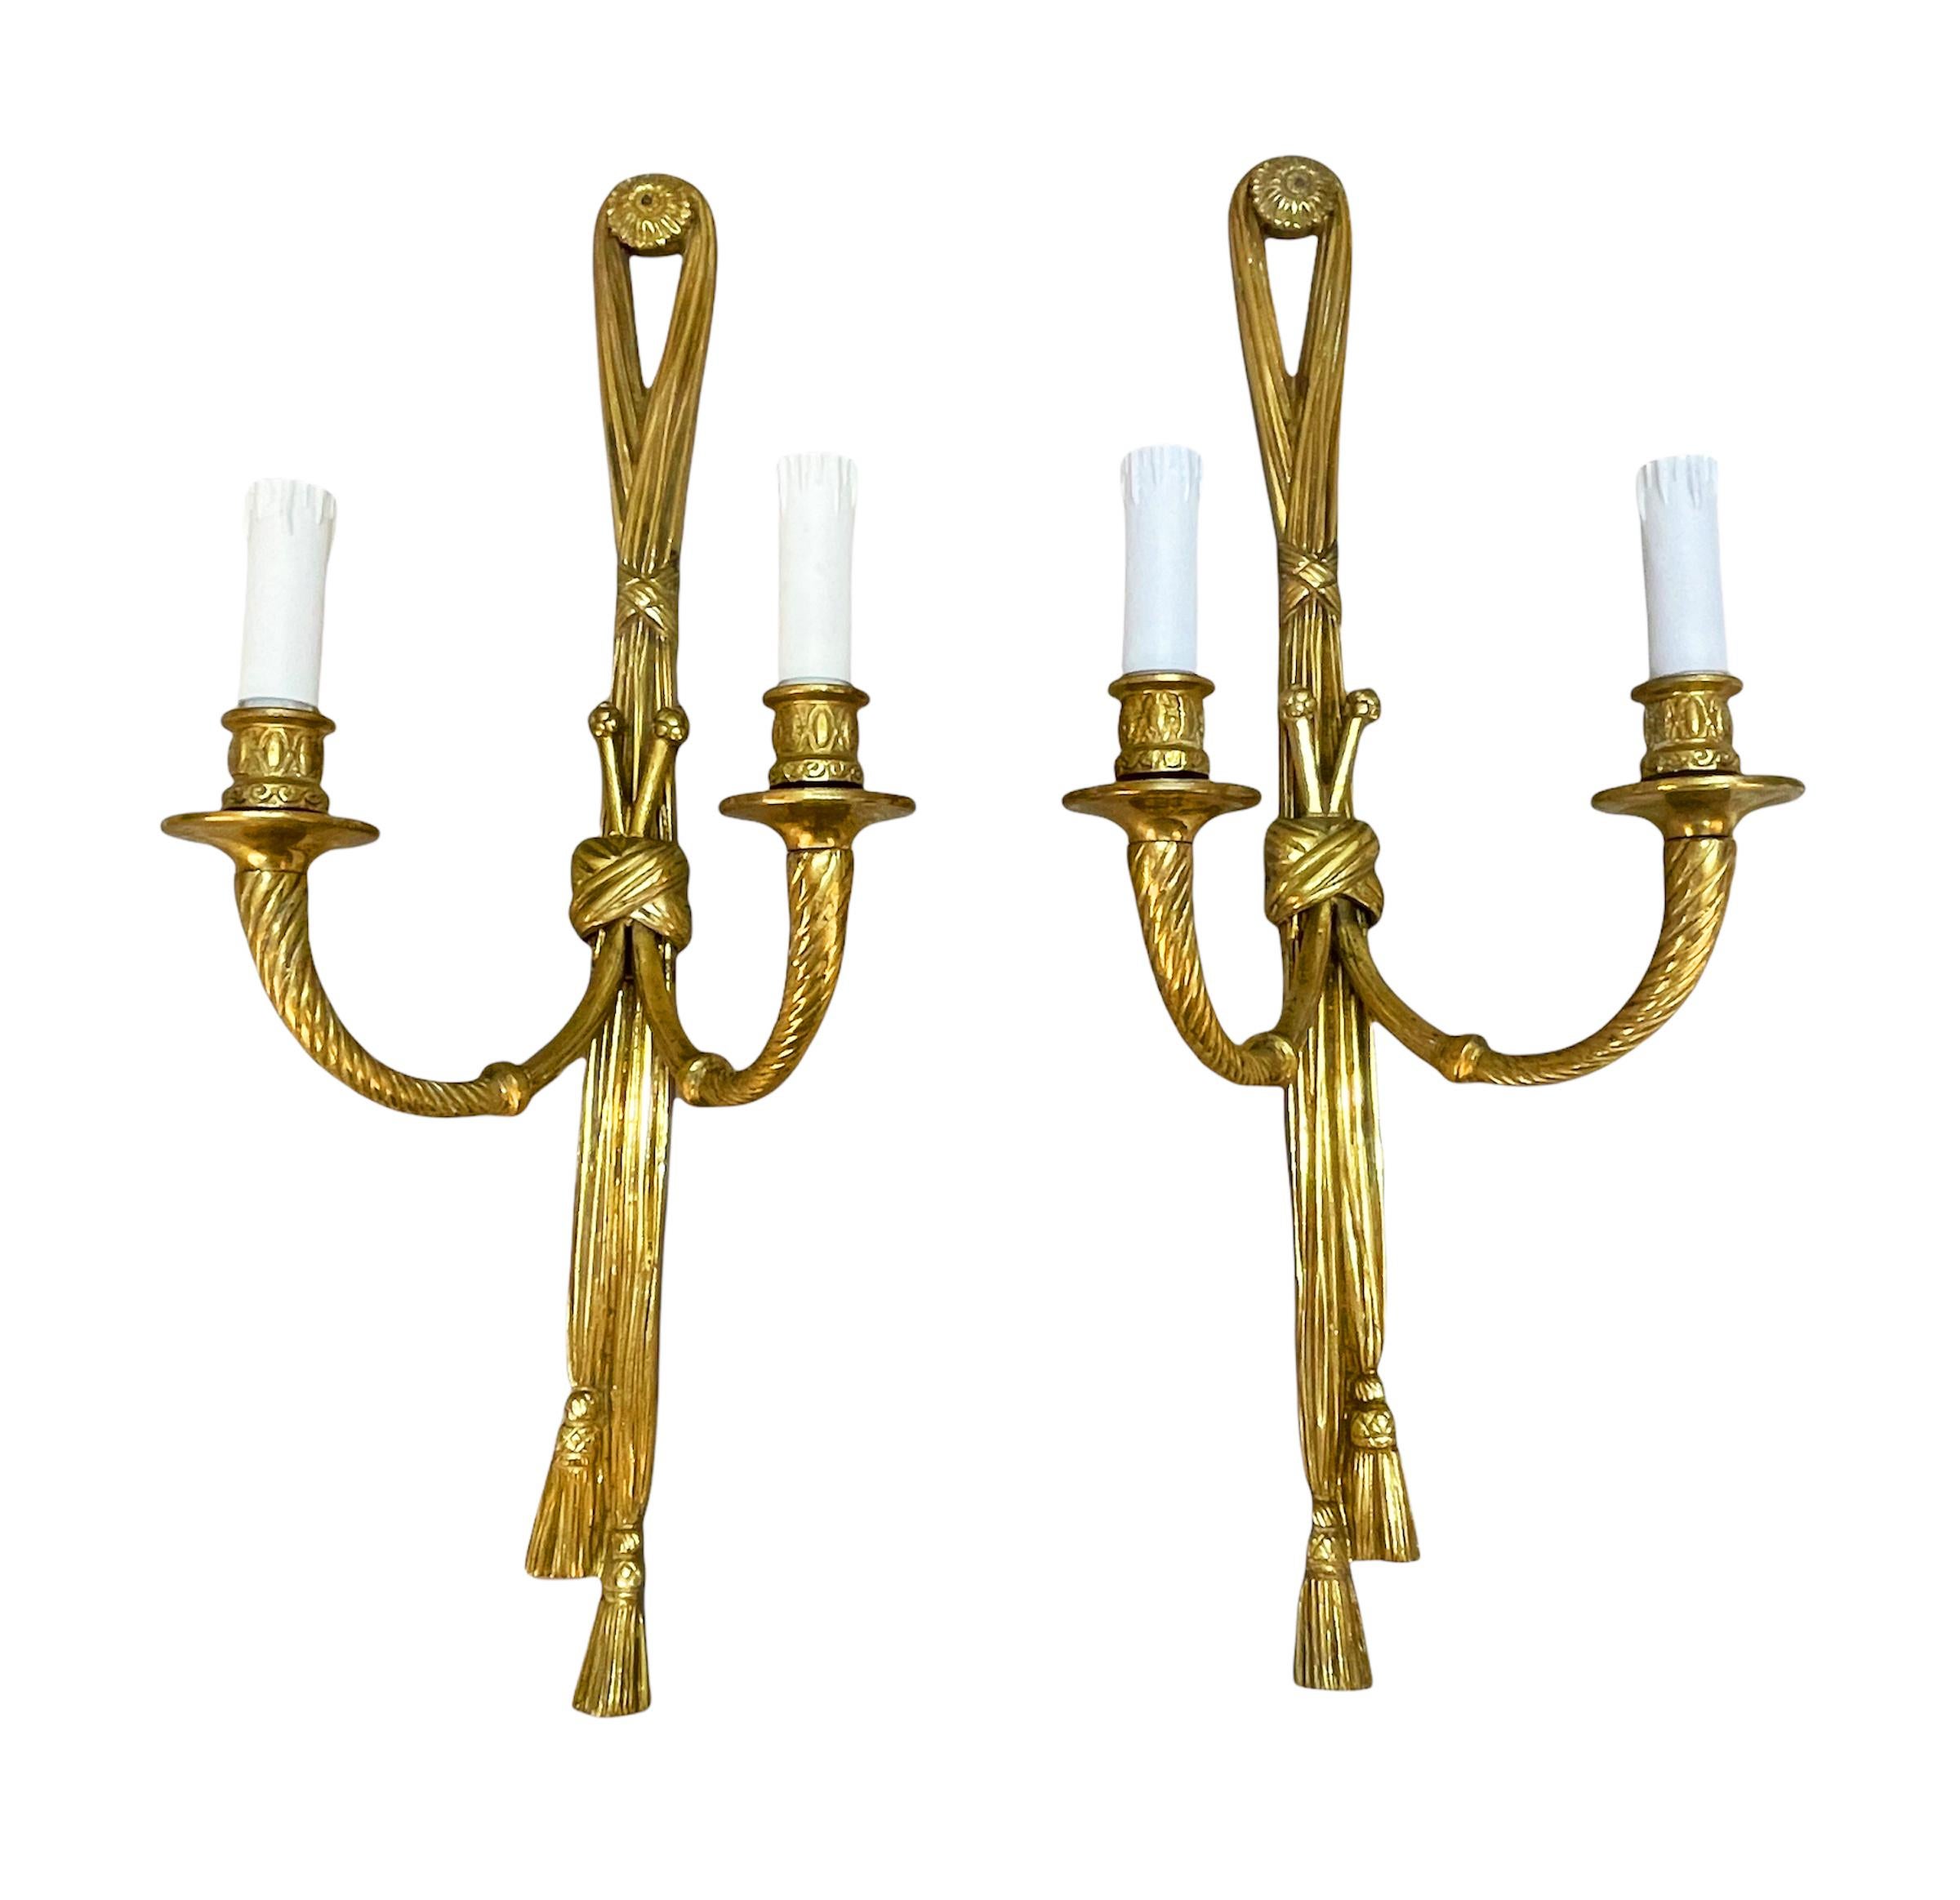 Wunderschönes Paar vergoldeter Bronzewandleuchter in Form von geknoteten Bändern, die zwei Kerzenarme halten. Diese erstaunlichen Sets wurden im 19. Jahrhundert in Frankreich hergestellt.

Beide bemerkenswerten Stücke enden in Quasten, die über